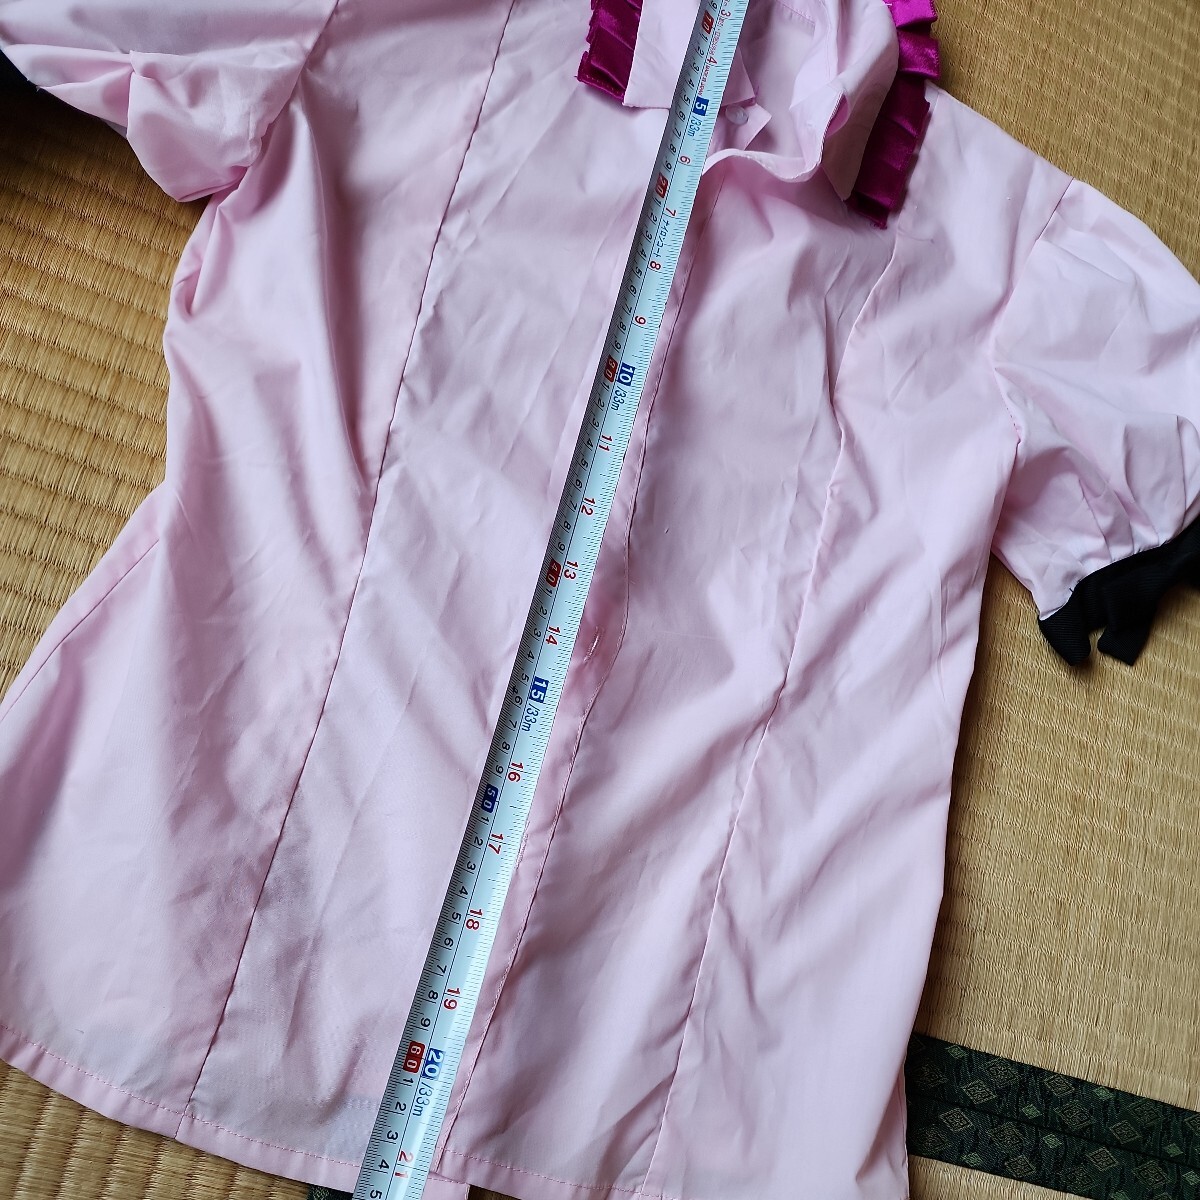 東方project 姫海棠はたて Mサイズ 一円スタートコスプレ衣裳 スカートと頭のピンクパープルはすべすべした生地です 黒にピンクの画像3